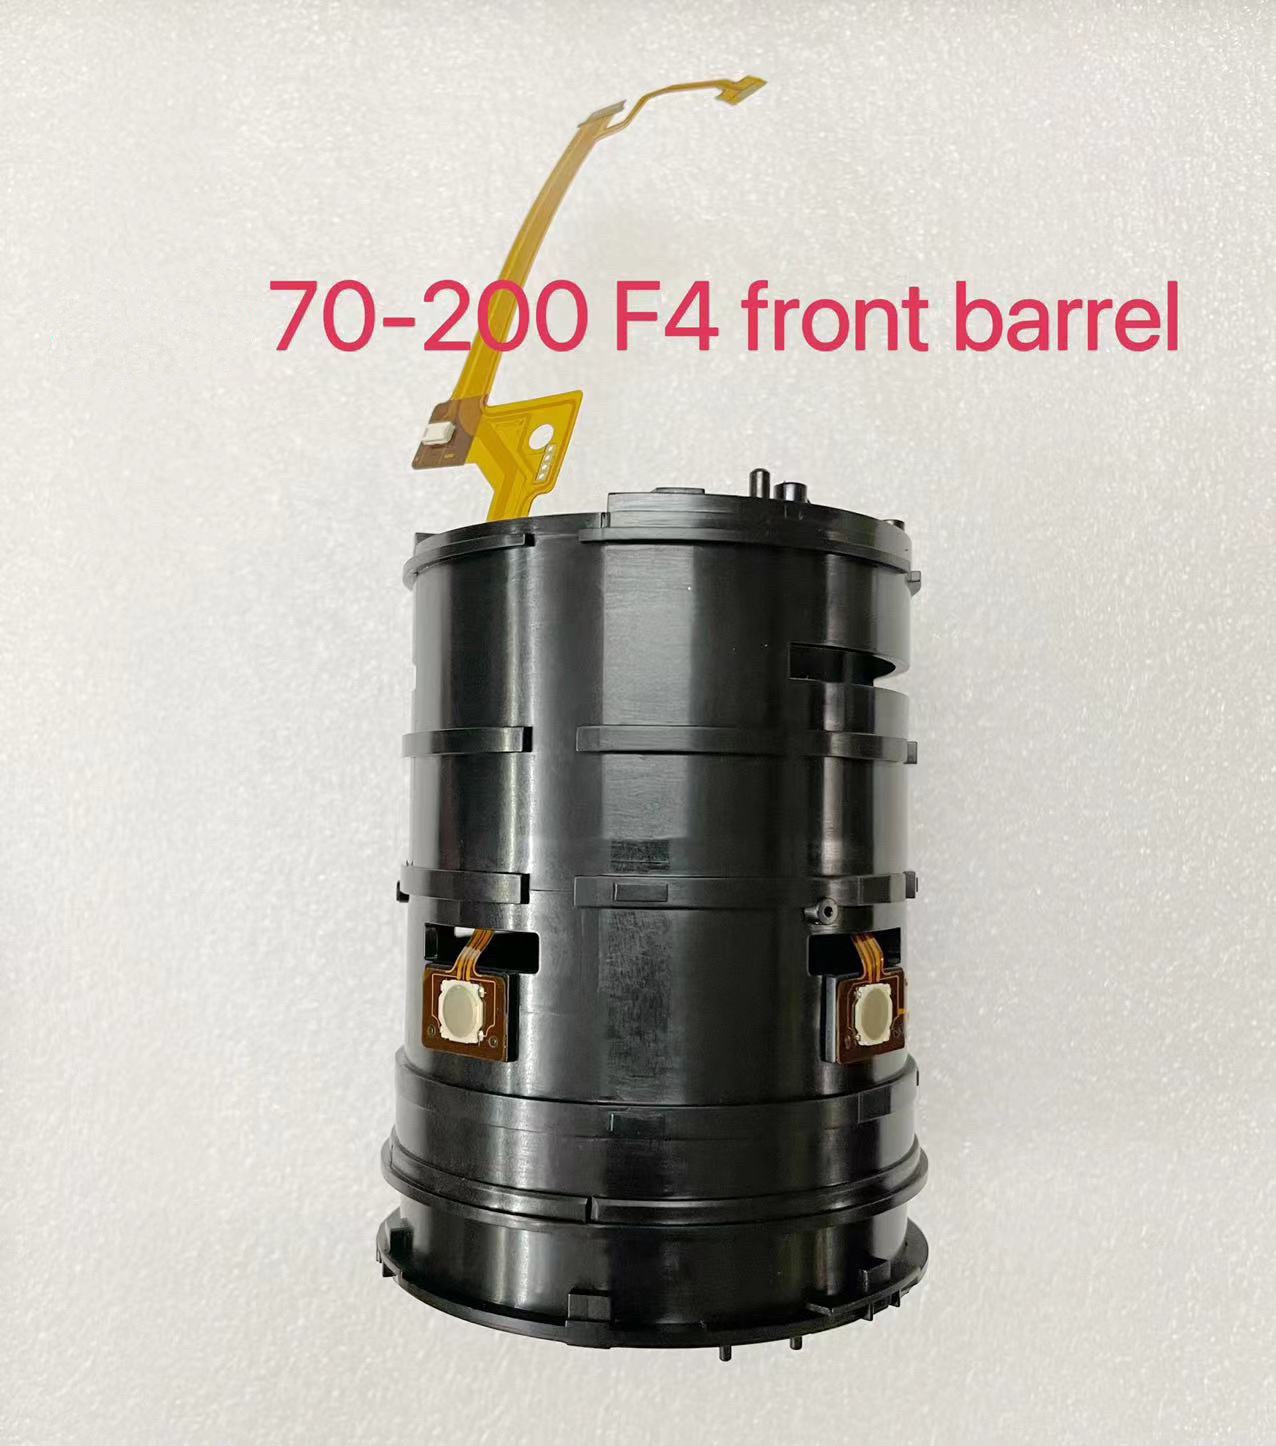 SEL70200GFE FE 70-200mm F/4 f4 front barrel new